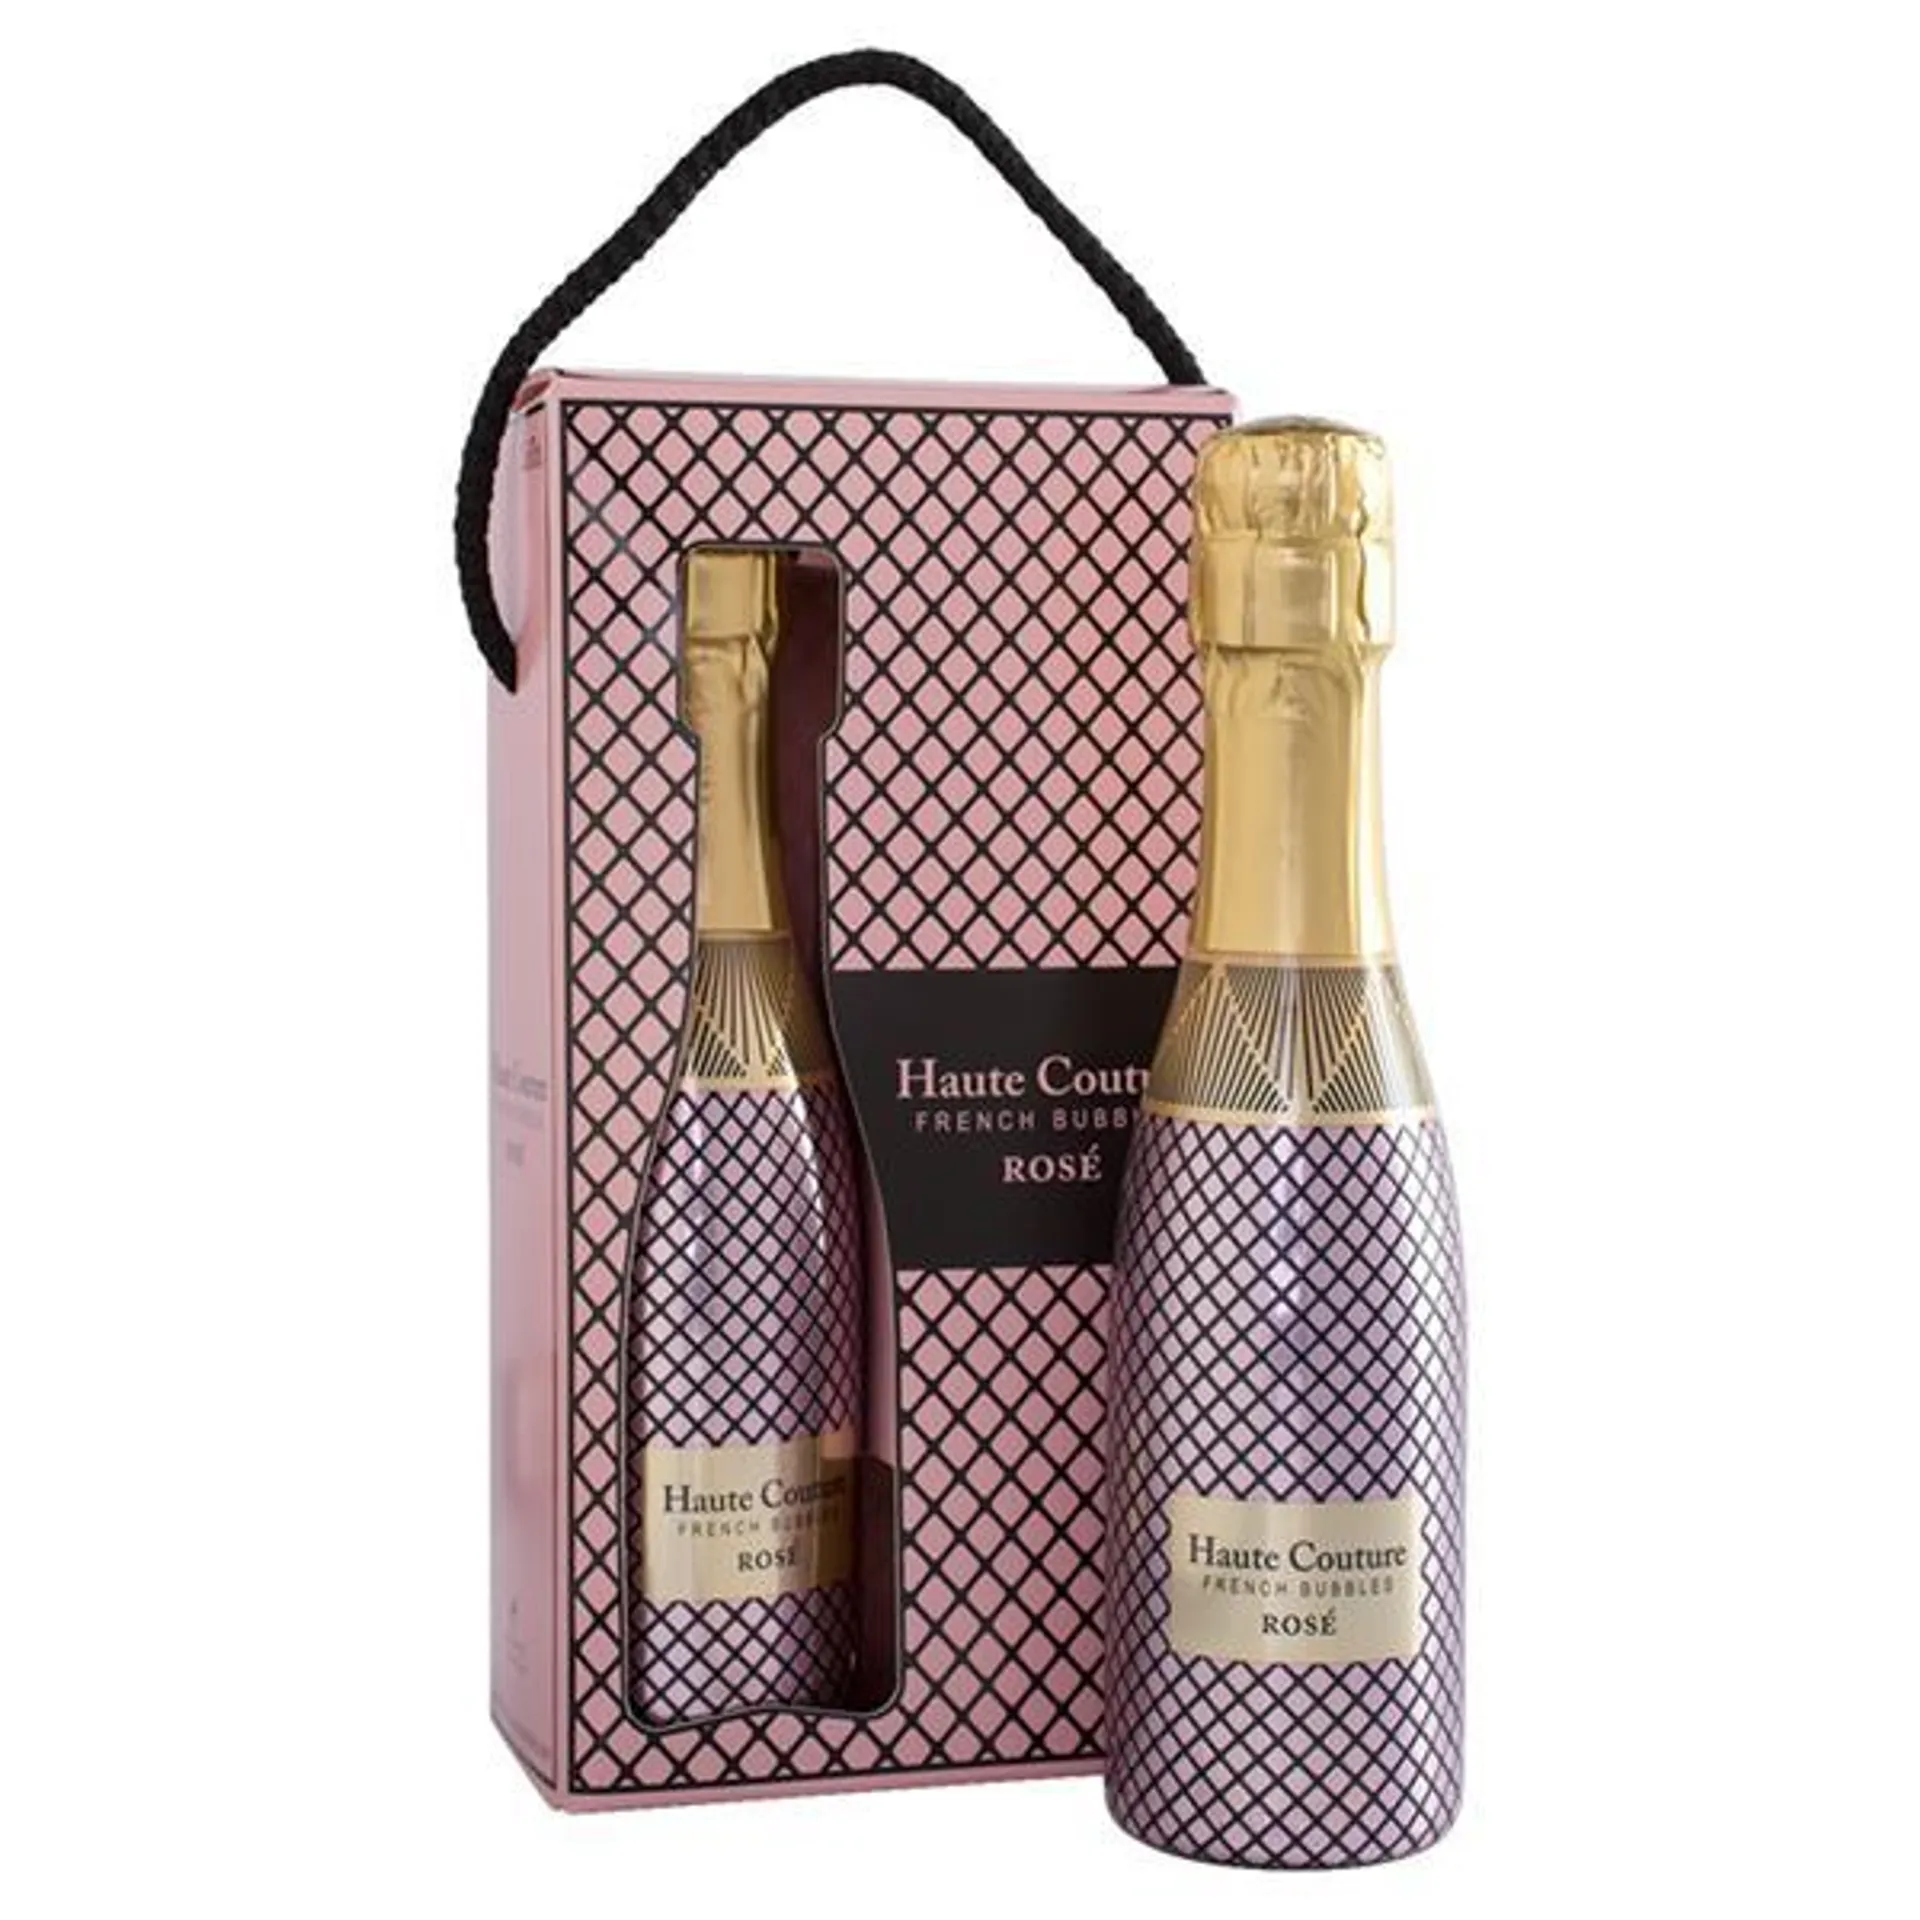 Haute Couture French Bubbles Rosé Brut 2 x 200ml Gift Set